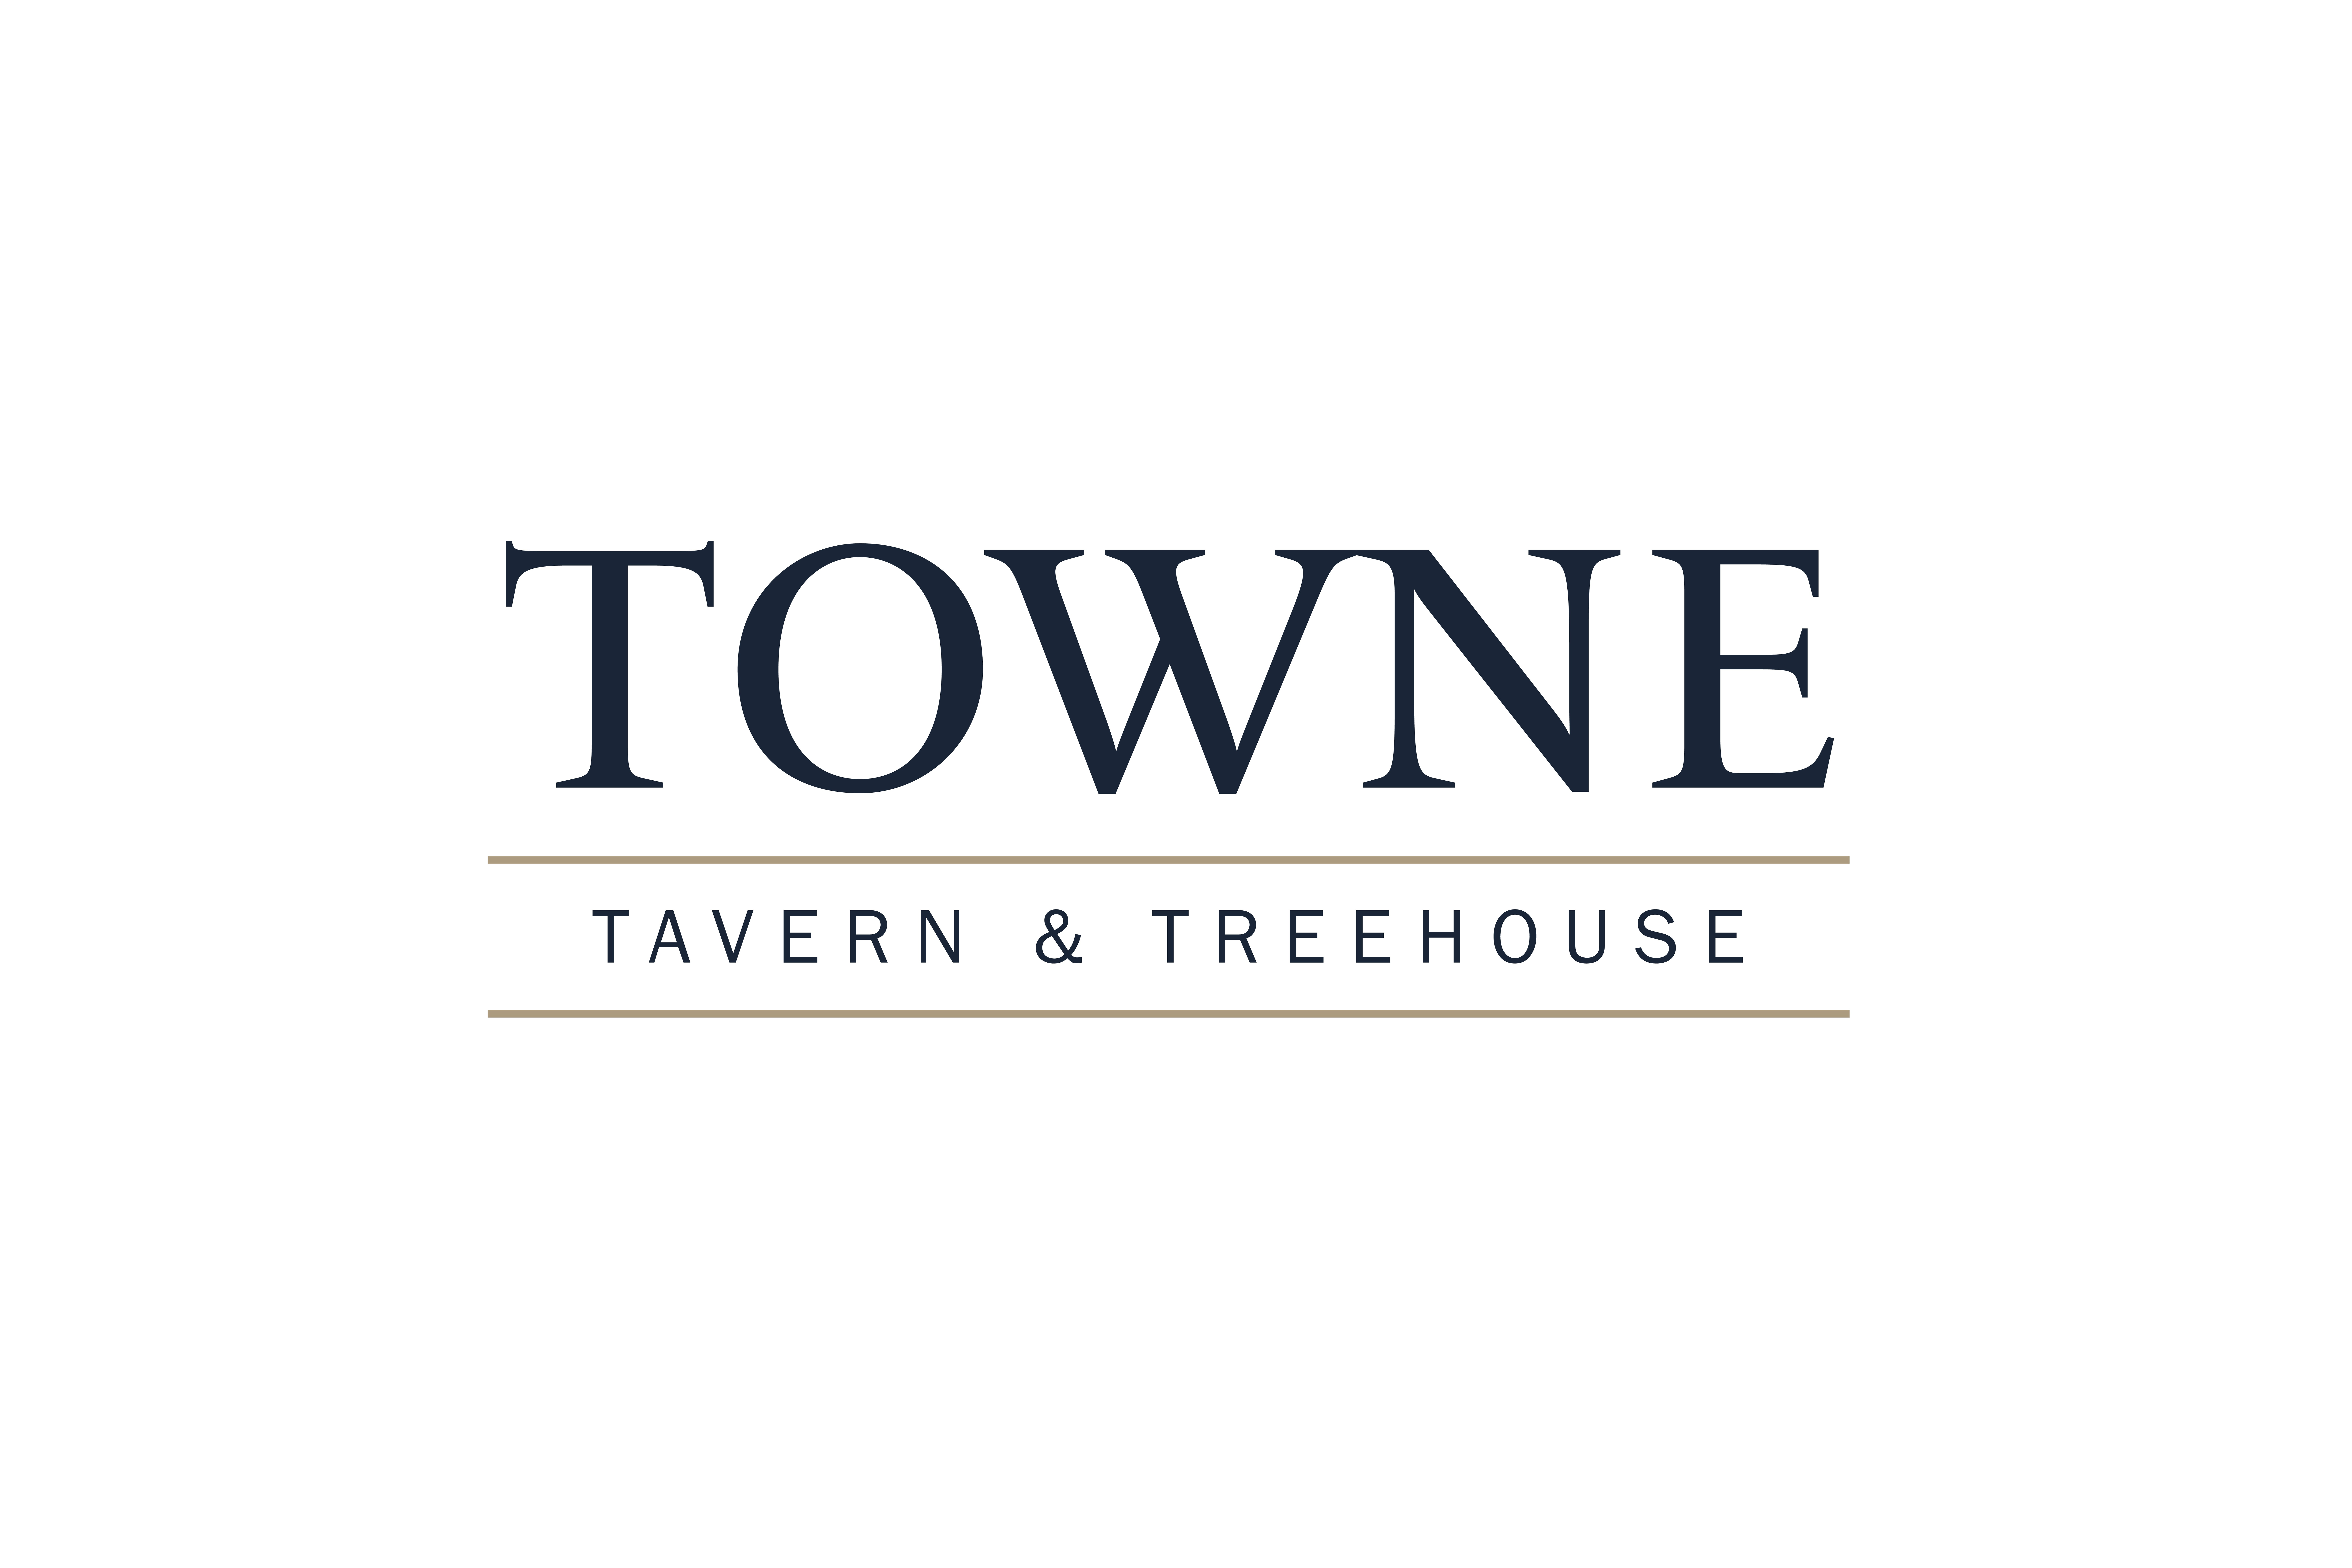 Towne Tavern & Treehouse 242 Mattakeesett St